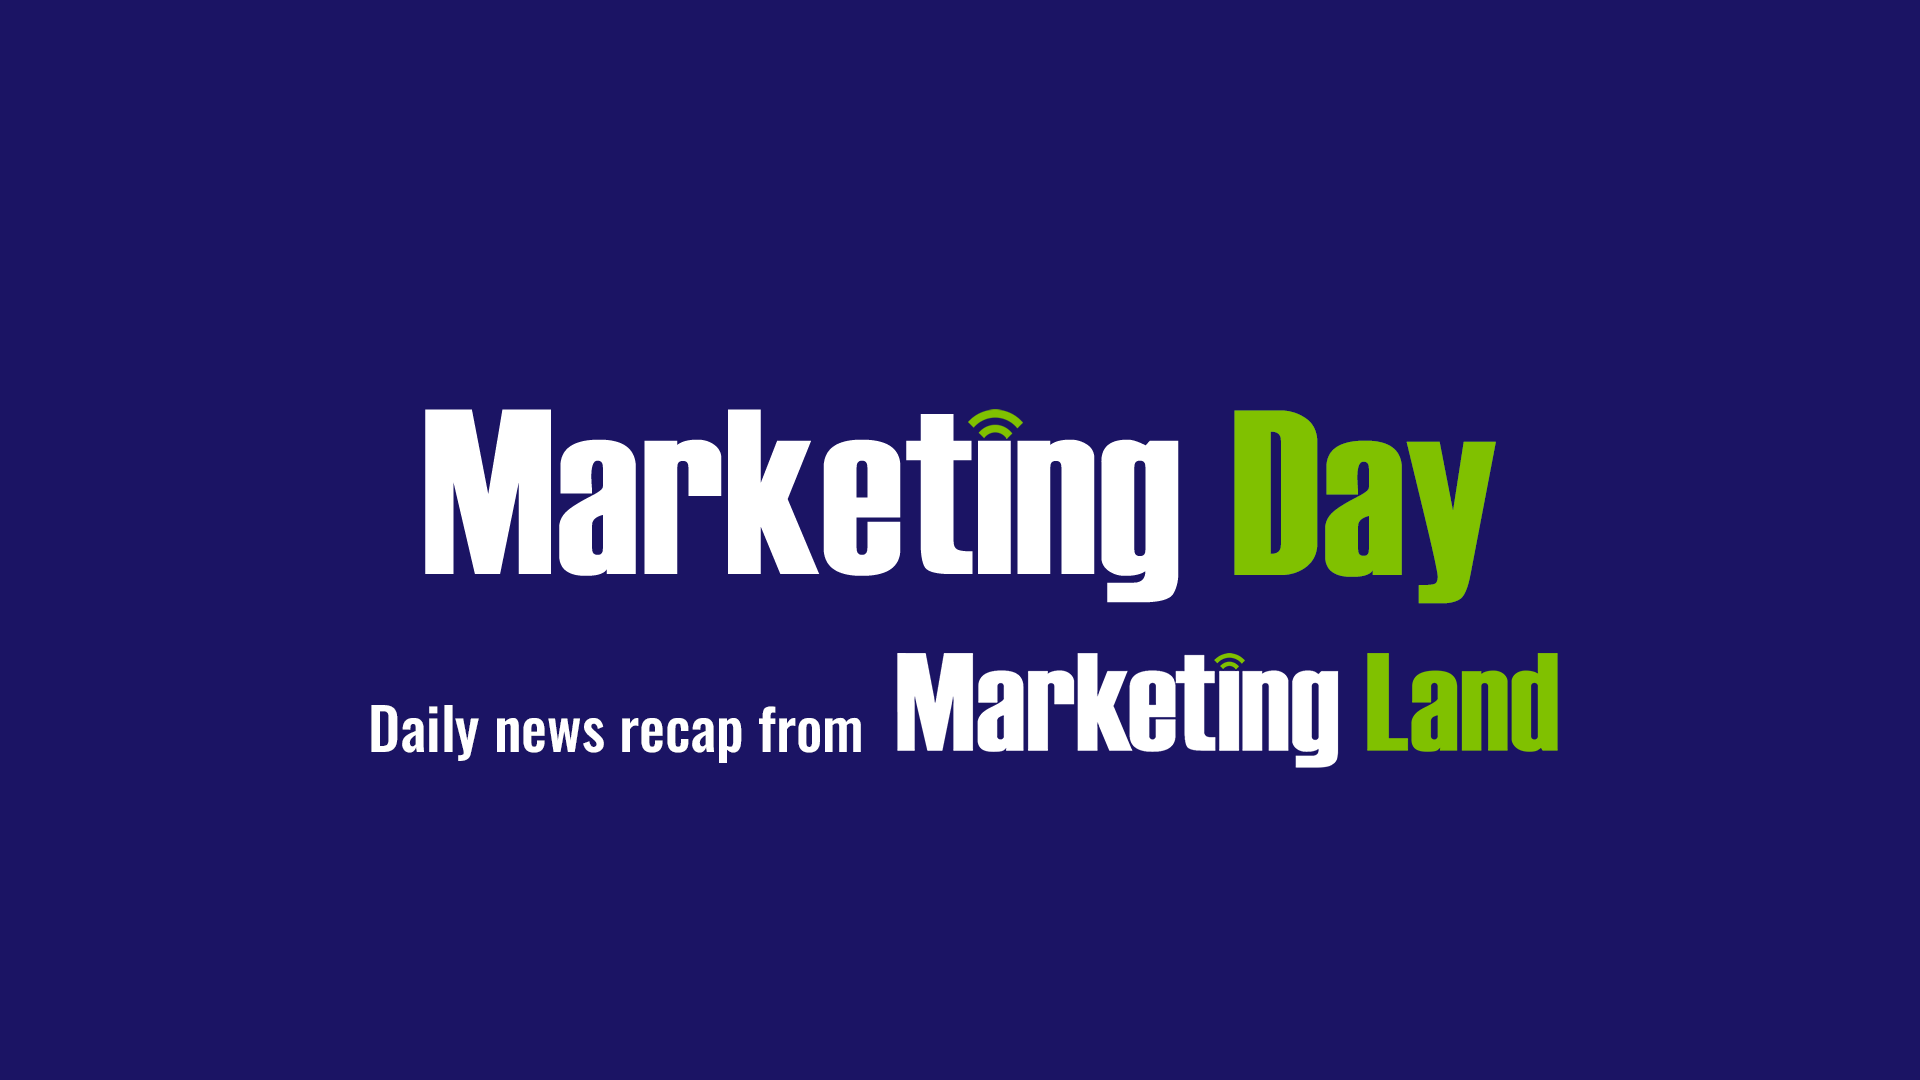 marketing-day-header-v2-mday